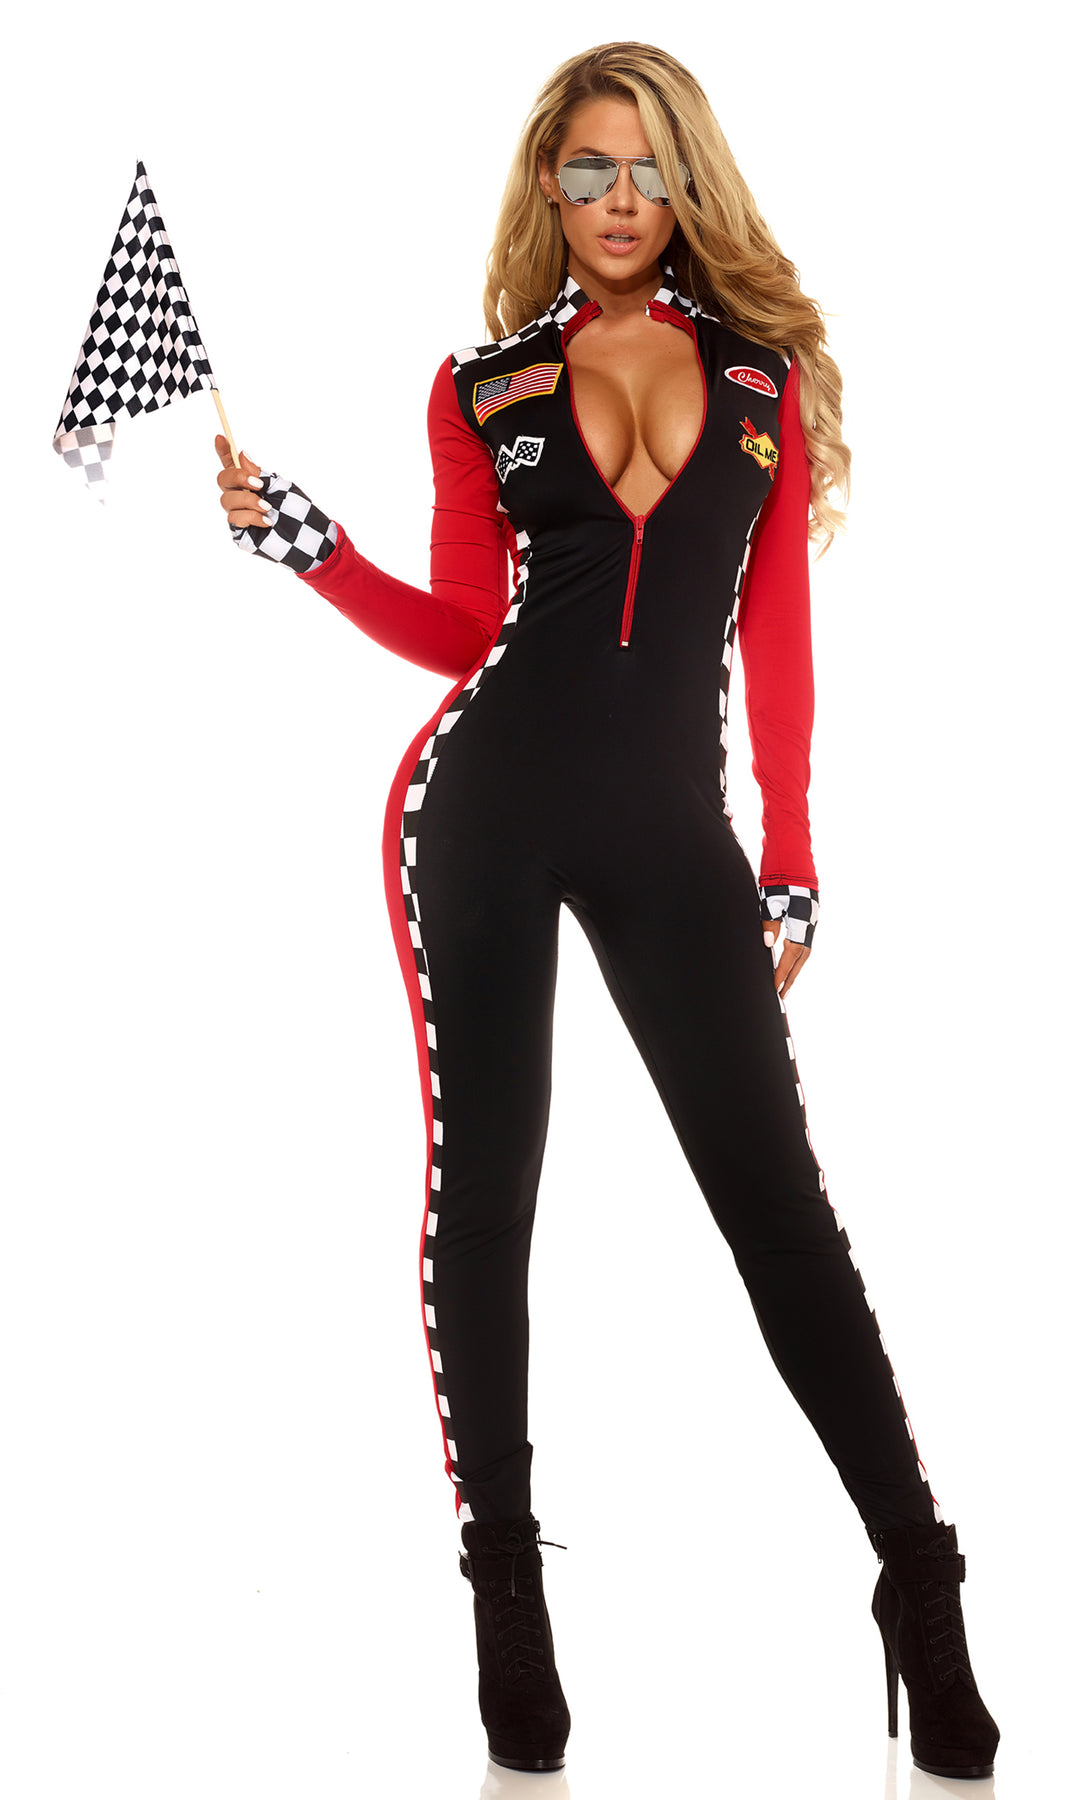 Women's Top Speed Racer Costume